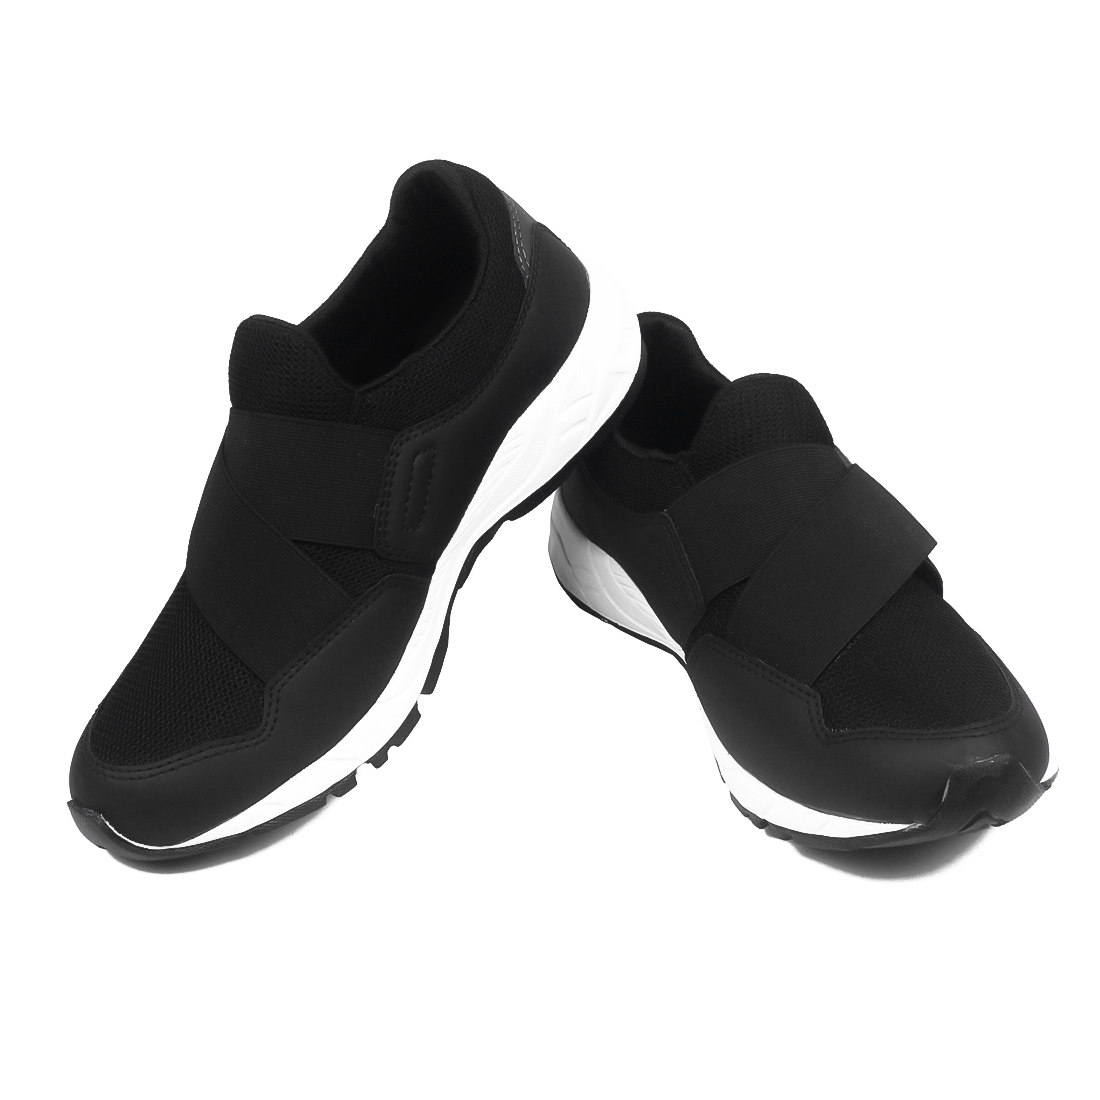 Buy Asian Men Black Slip on Running Shoes Online @ ₹499 from ShopClues